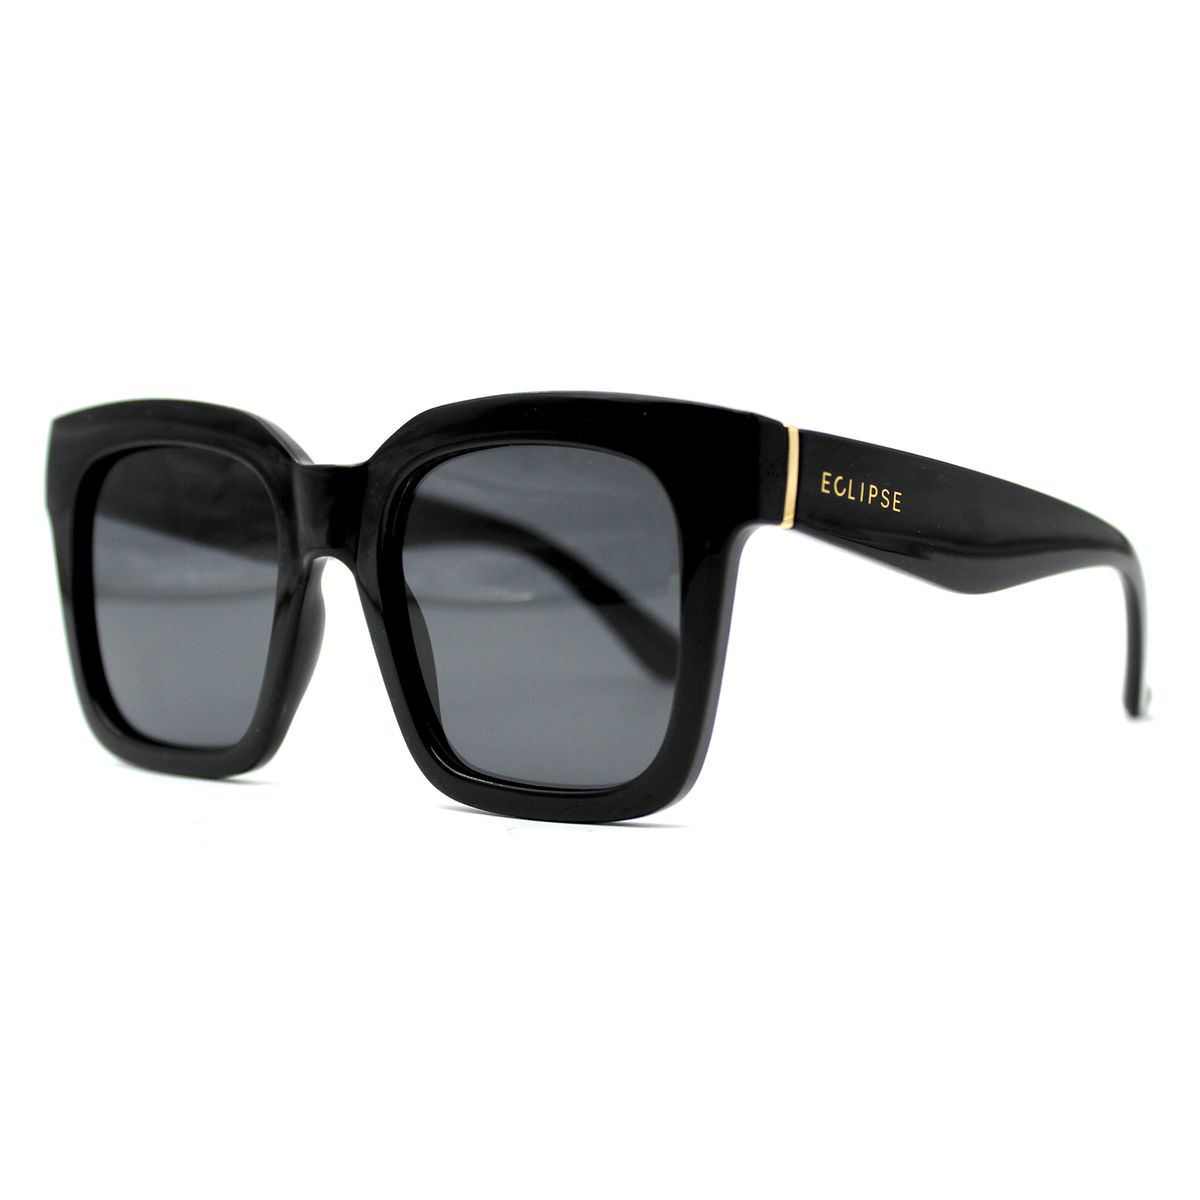 Belmont Ladies Polarised Plastic Sunglasses - Black | Shop Today. Get ...